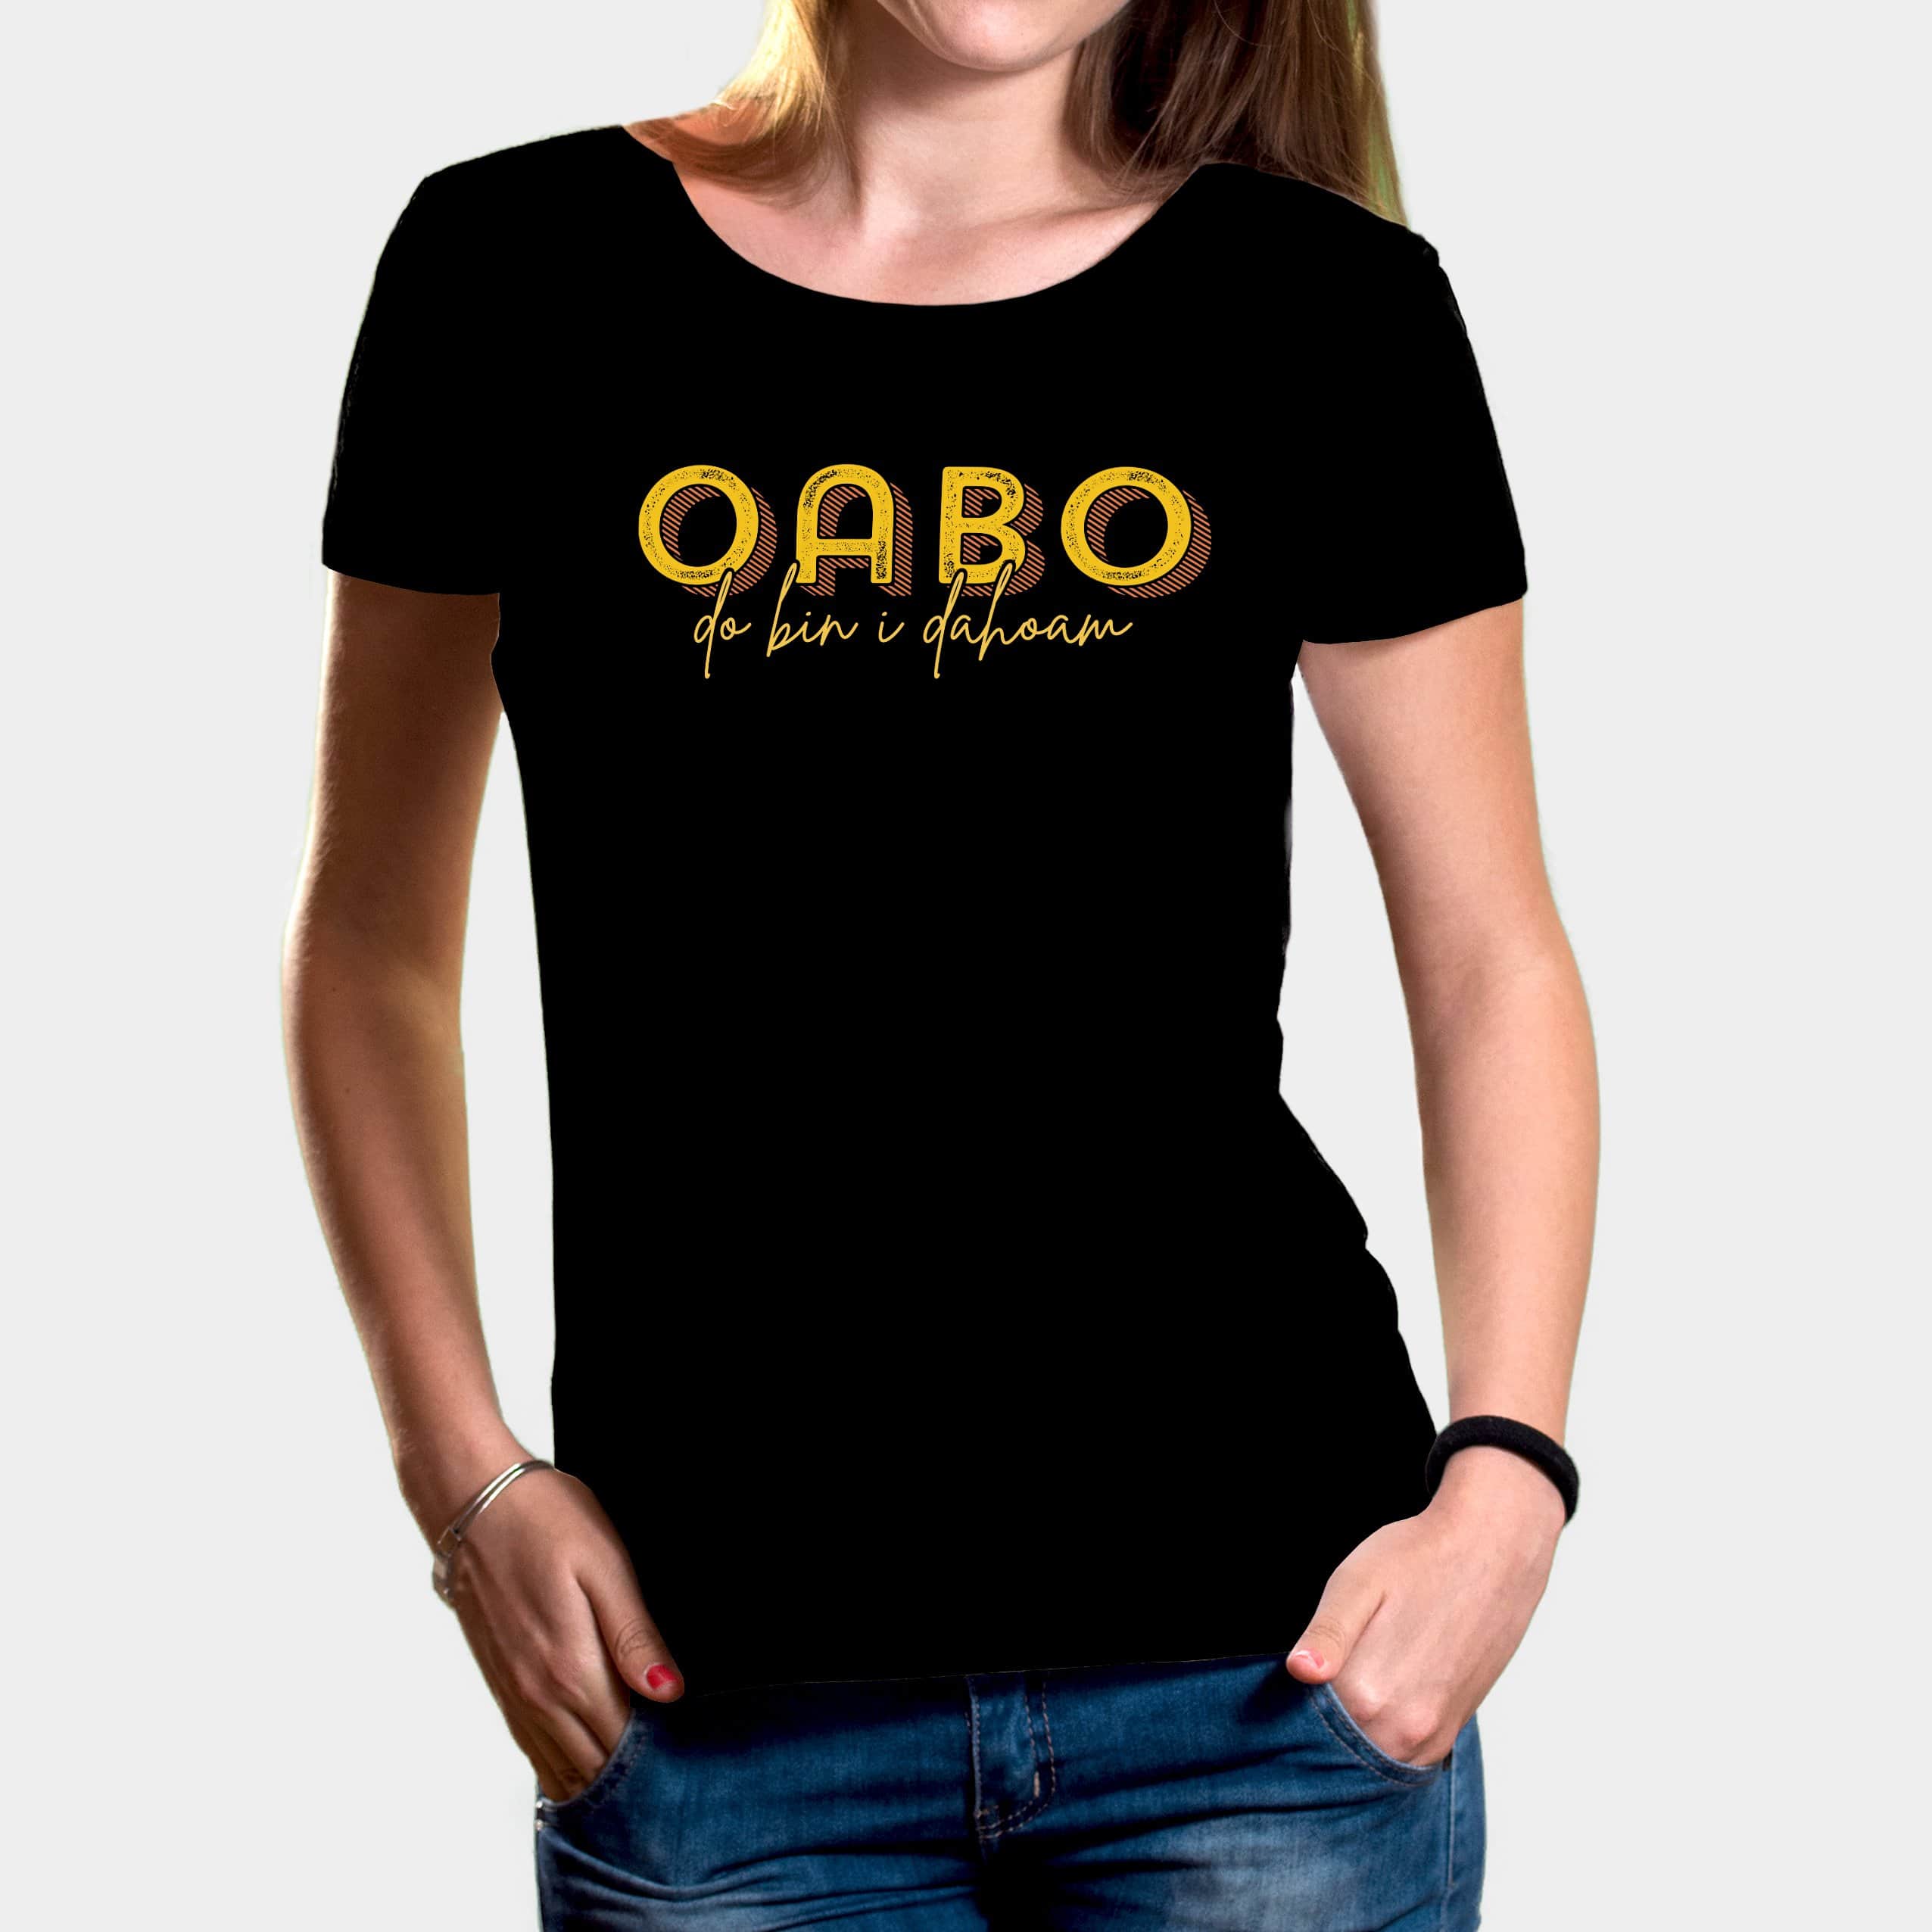 Projekt Damen-T-Shirt "Oabo" XS / schwarz - aus nachhaltiger und fairer Produktion